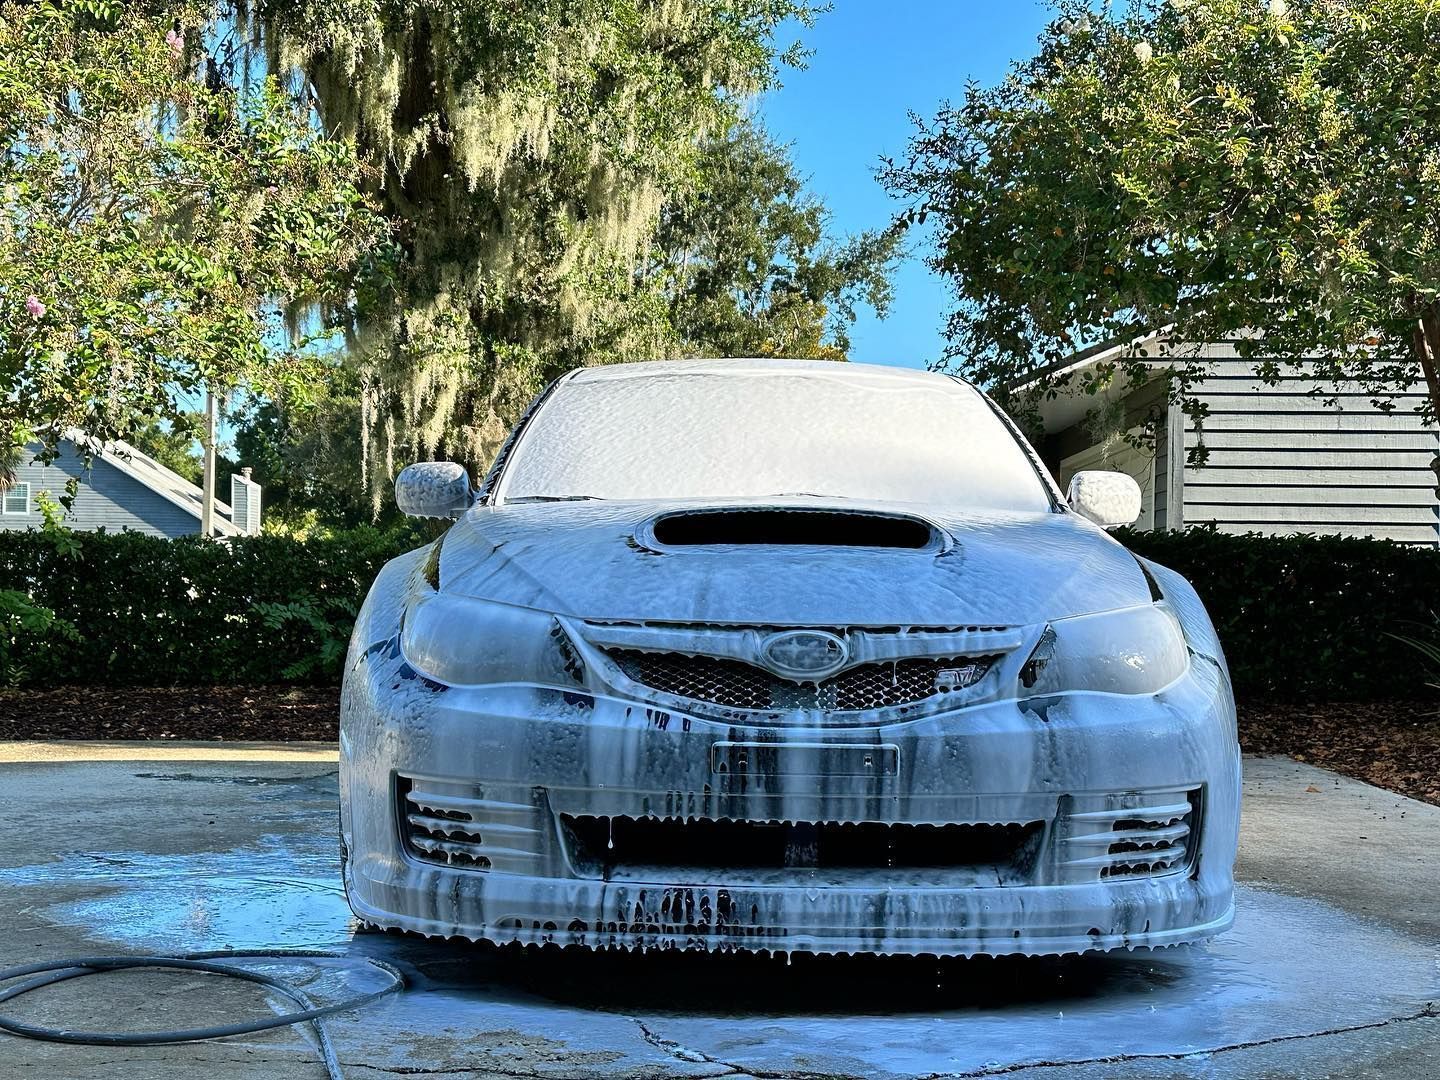 Subaru WRX Car Detailing with Aenso Polaris Foam Soap Orlando, FL USA